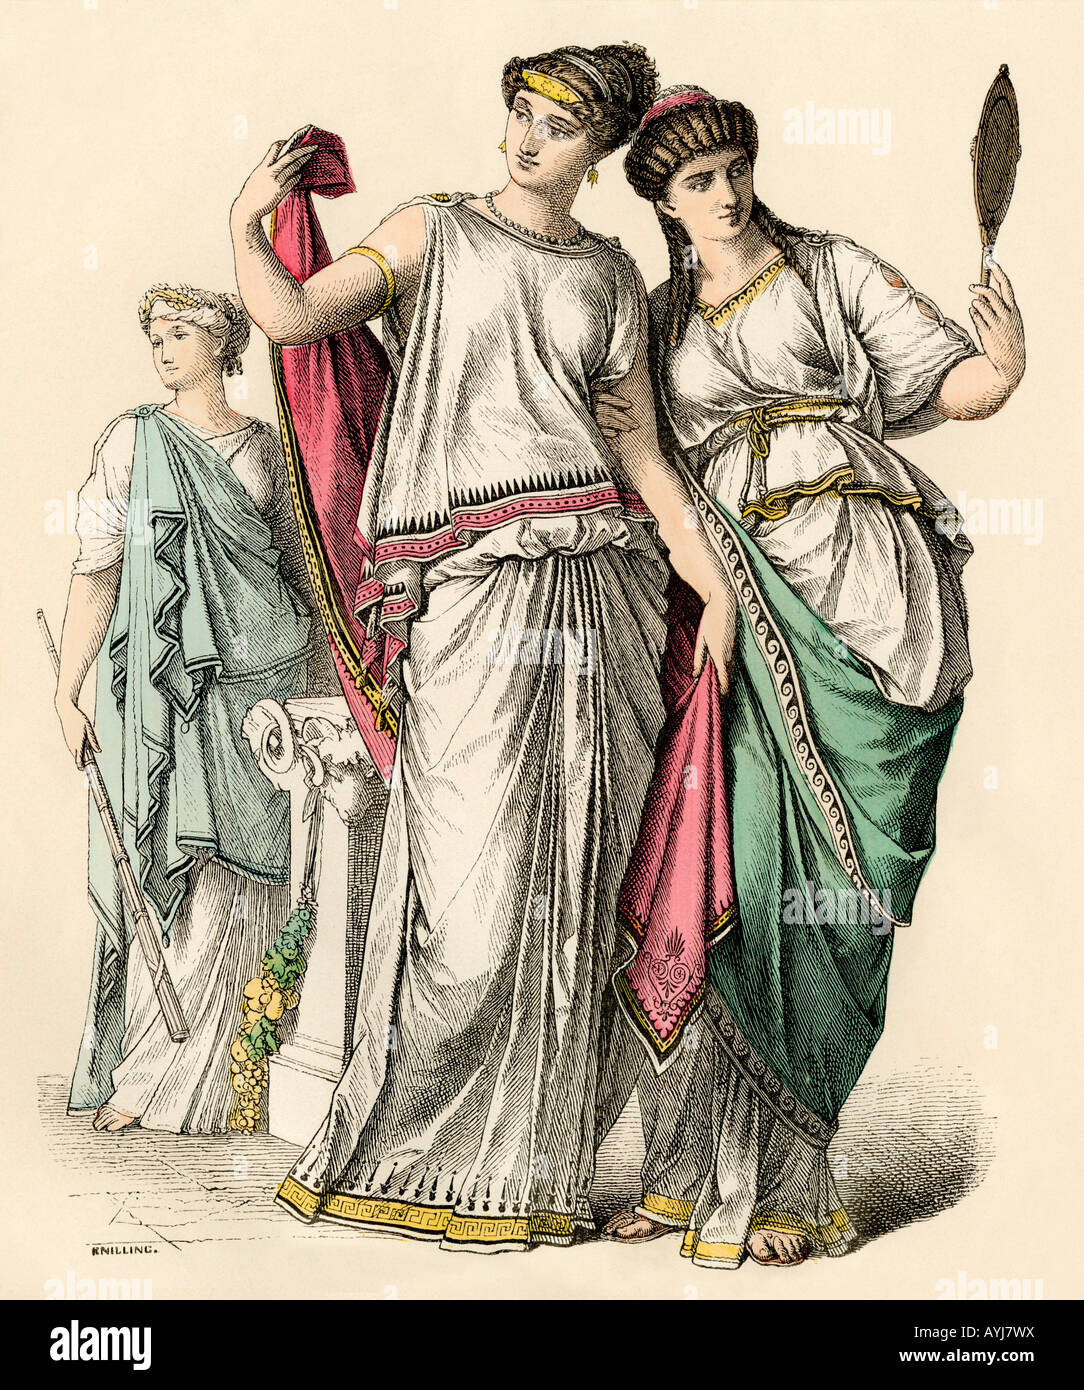 Las mujeres griegas antiguas y una sacerdotisa. Mano de color imprimir Foto de stock